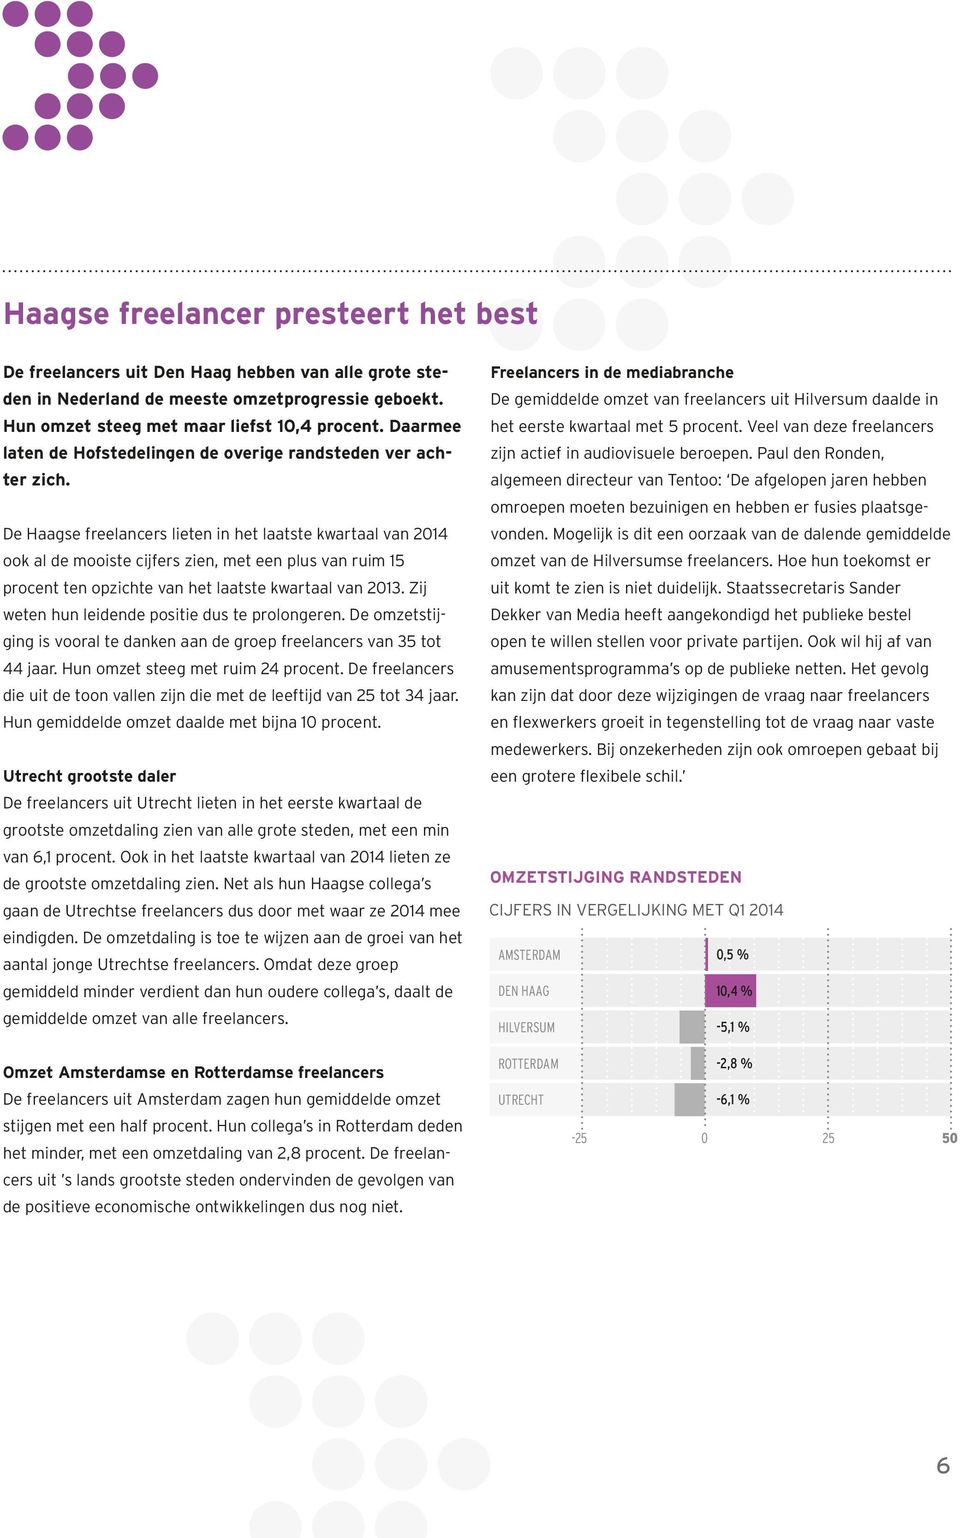 De Haagse freelancers lieten in het laatste kwartaal van 2014 ook al de mooiste cijfers zien, met een plus van ruim 15 procent ten opzichte van het laatste kwartaal van 2013.